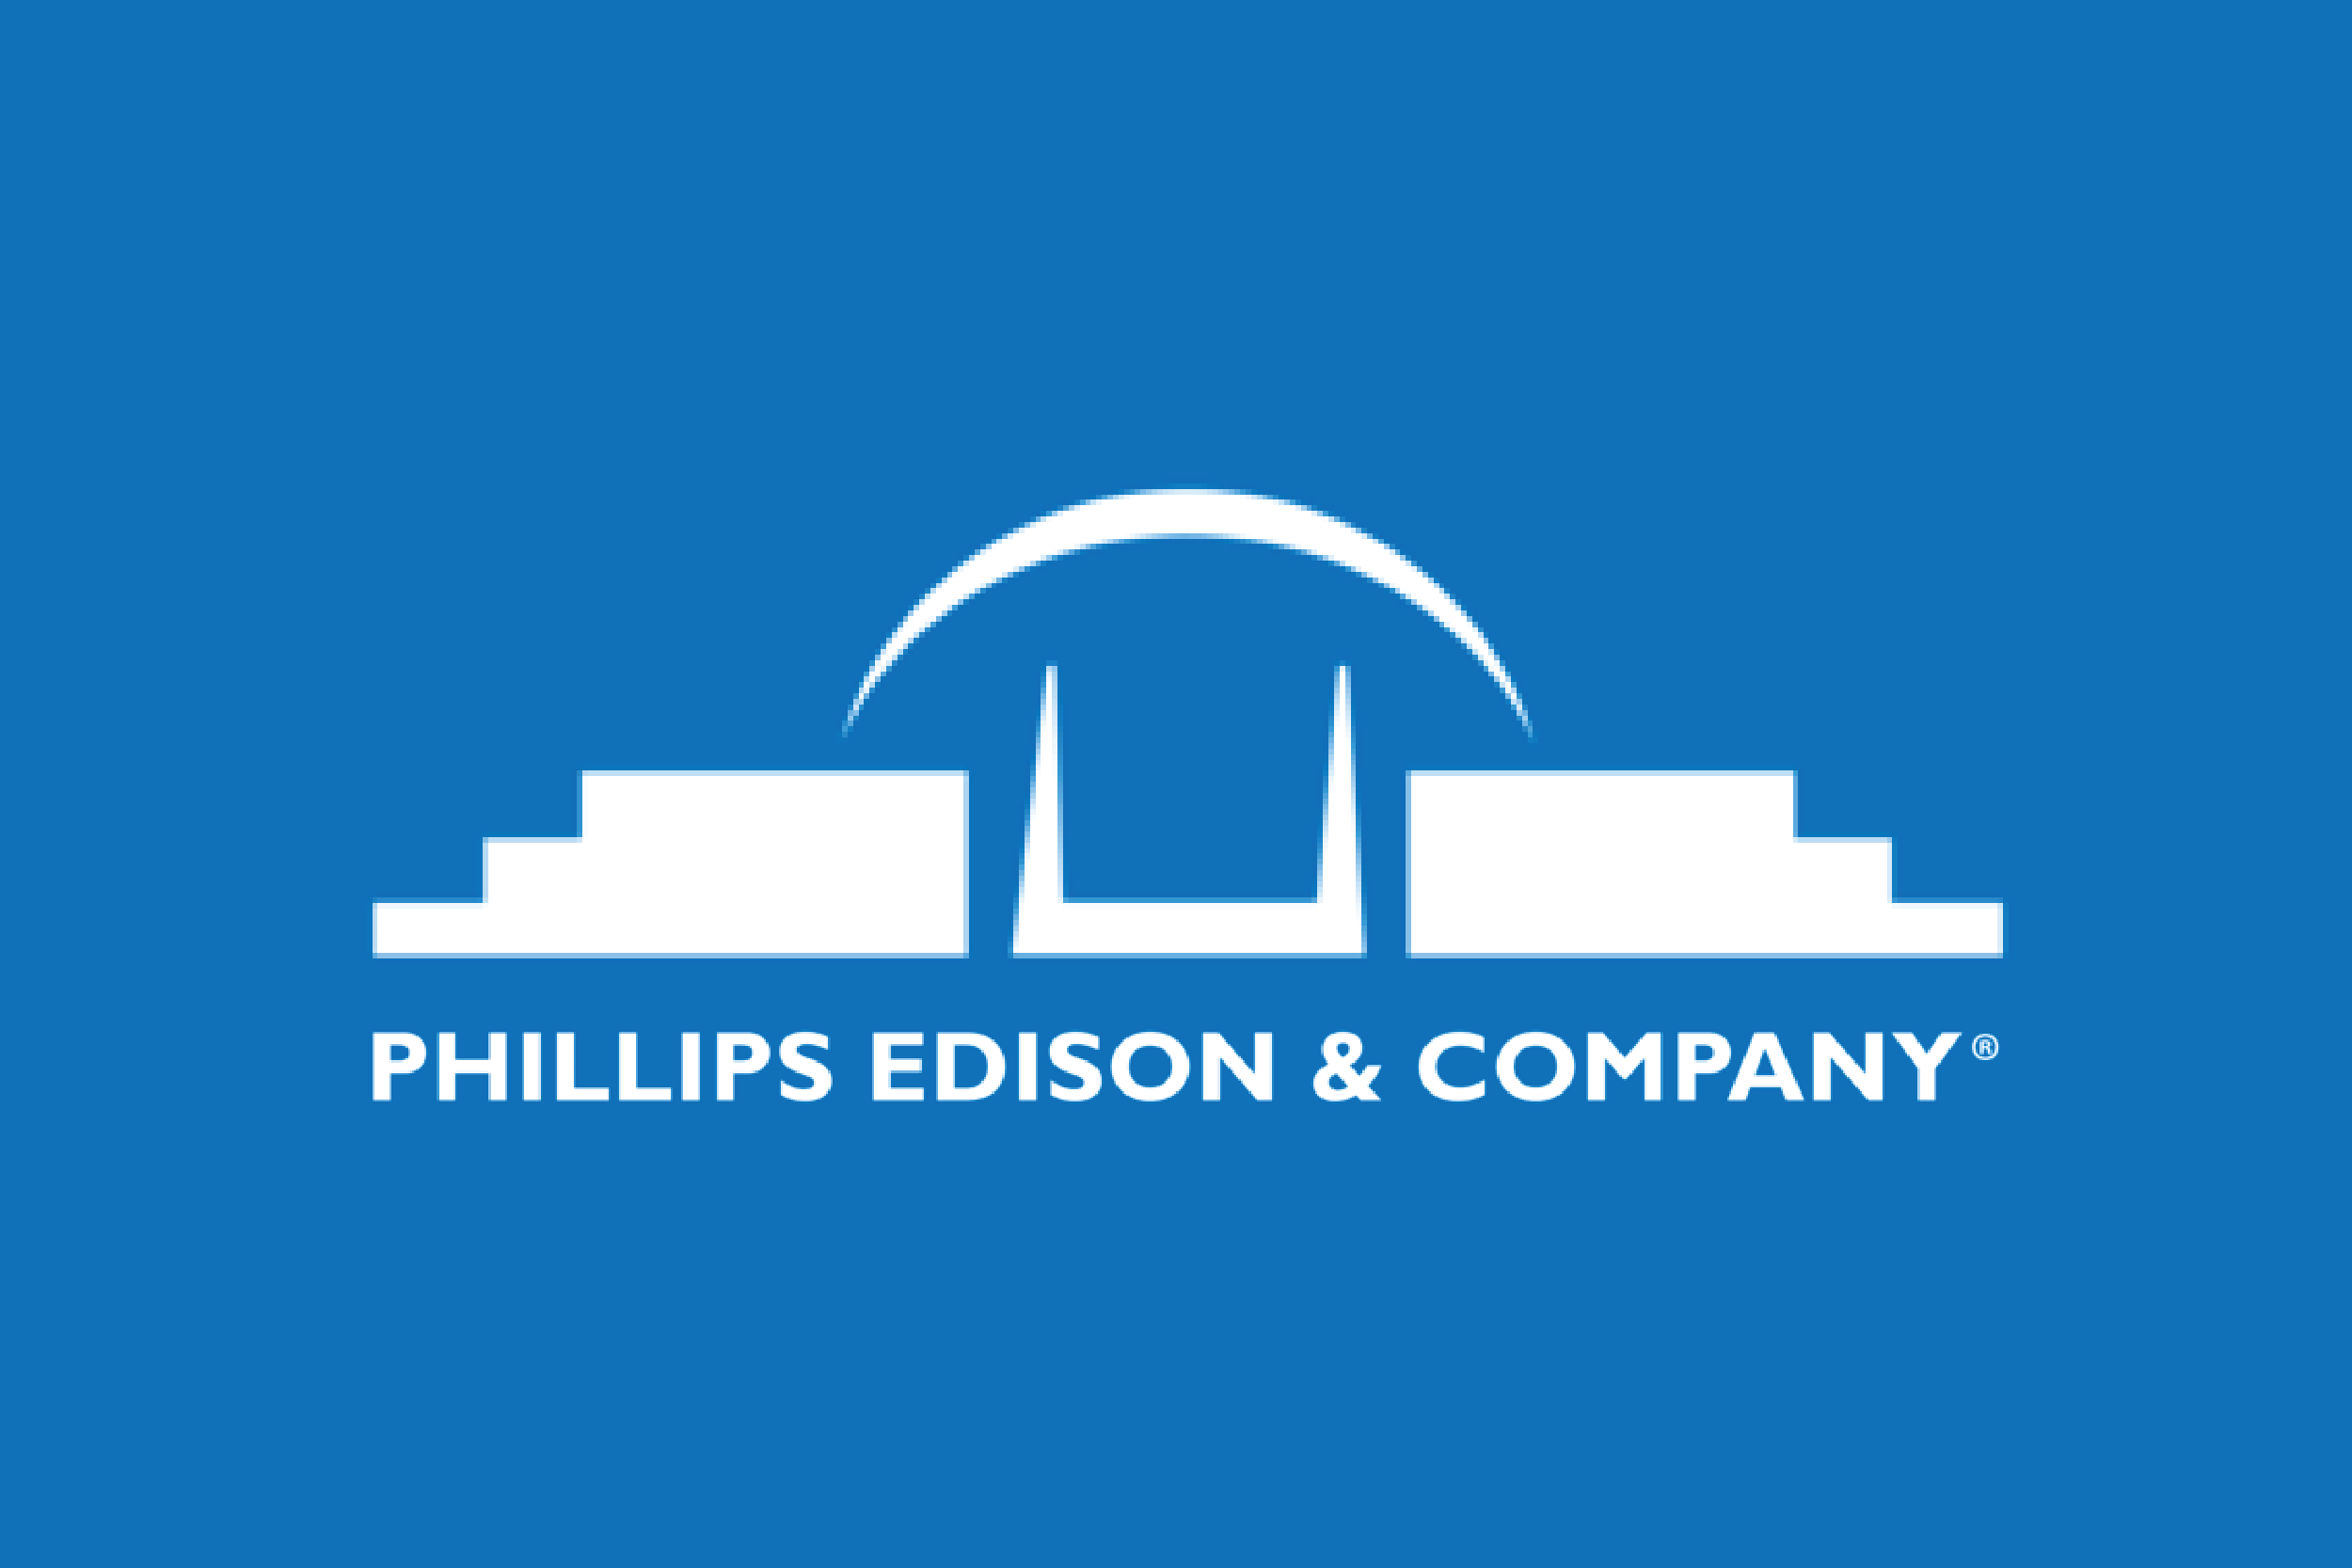 Mizuho nâng hạng cổ phiếu Phillips Edison lên mức Mua, giá mục tiêu 37 USD